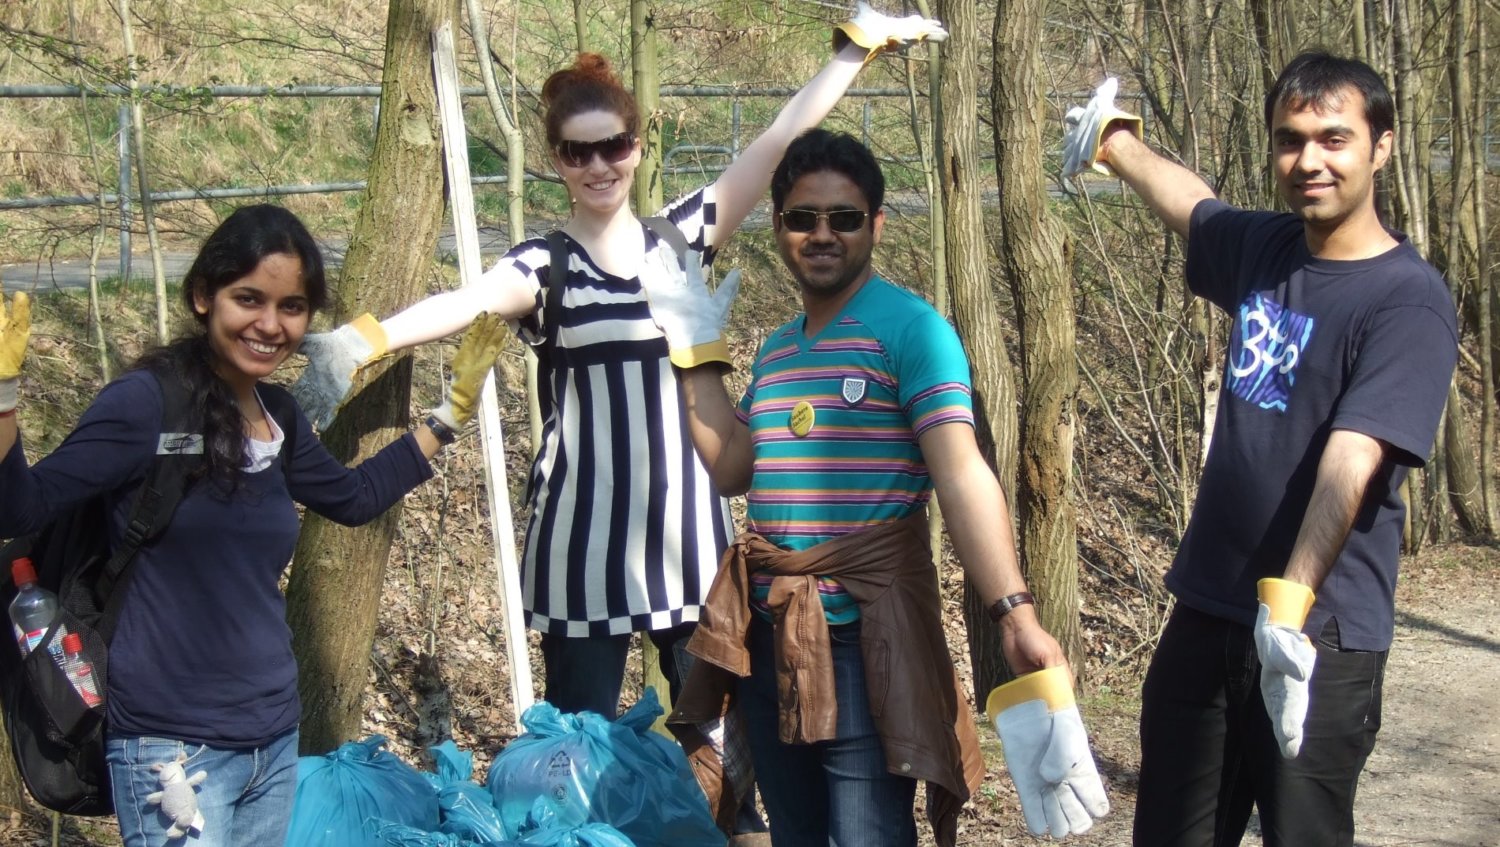 Stipendiaten bei einer Müllsammelaktion der Stadt Aachen